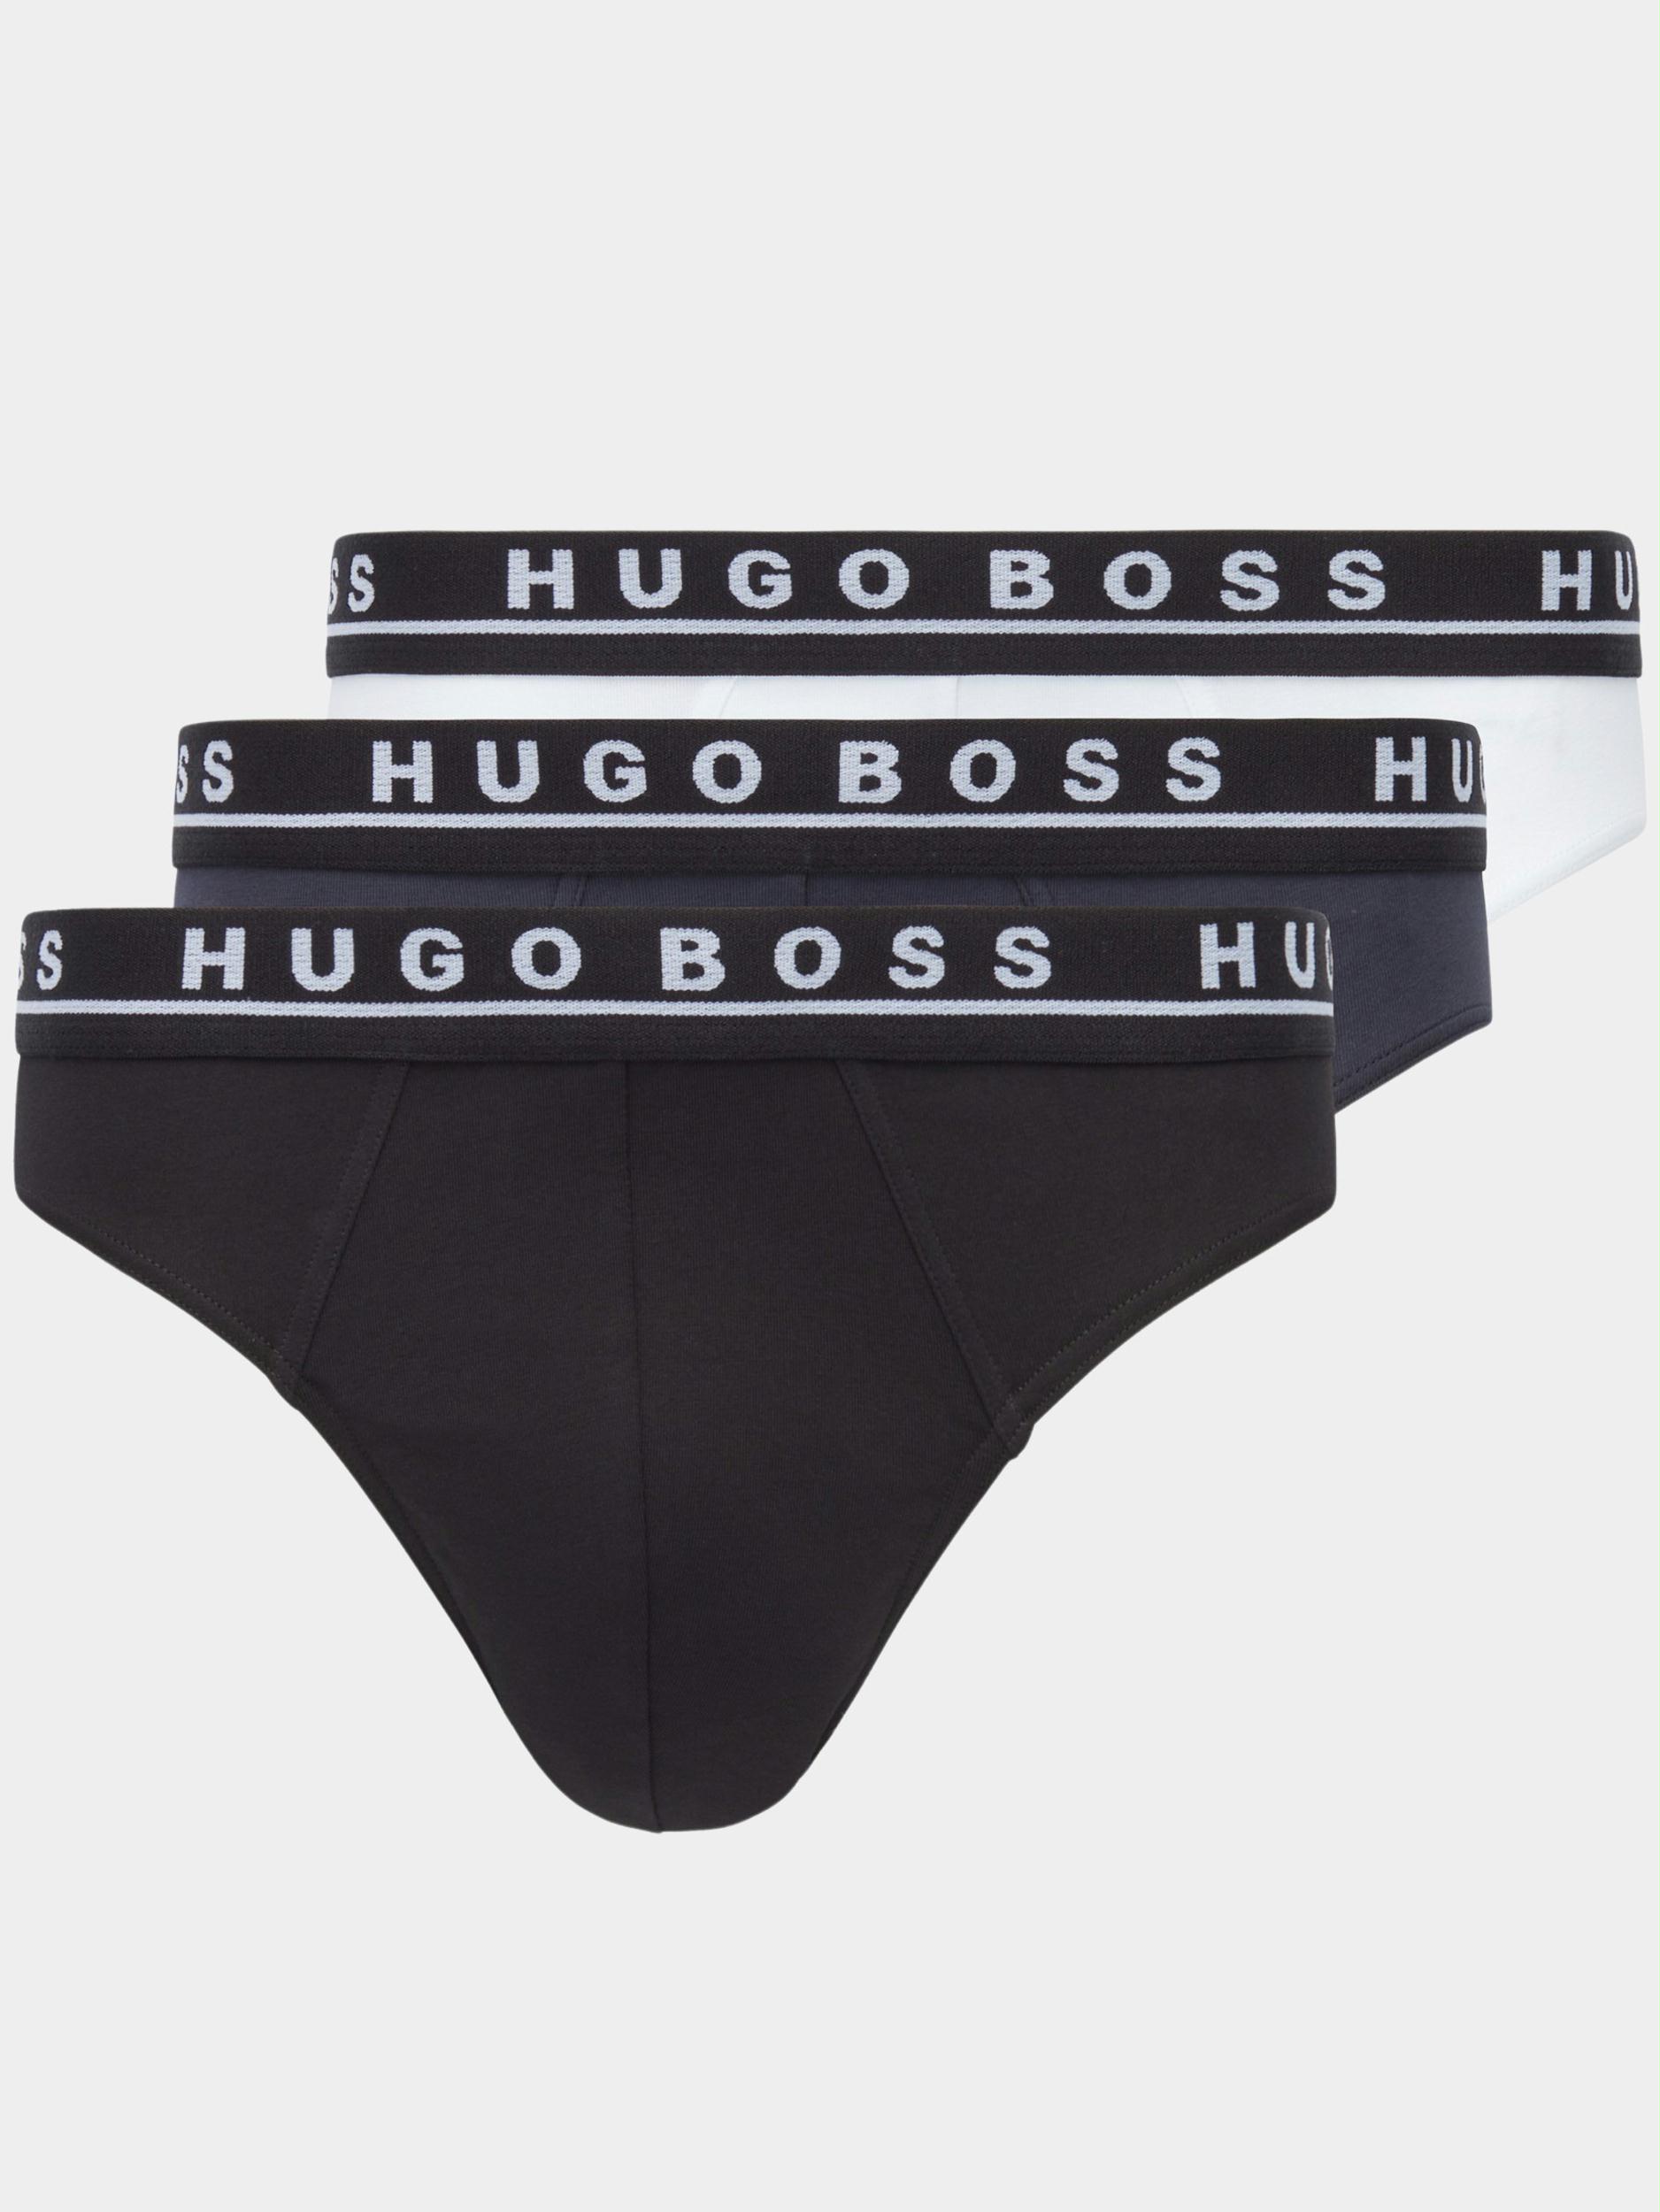 Afbeelding van Hugo Boss Boss men business (black) slip brief 3p co/el 10237826 01 50458559/976